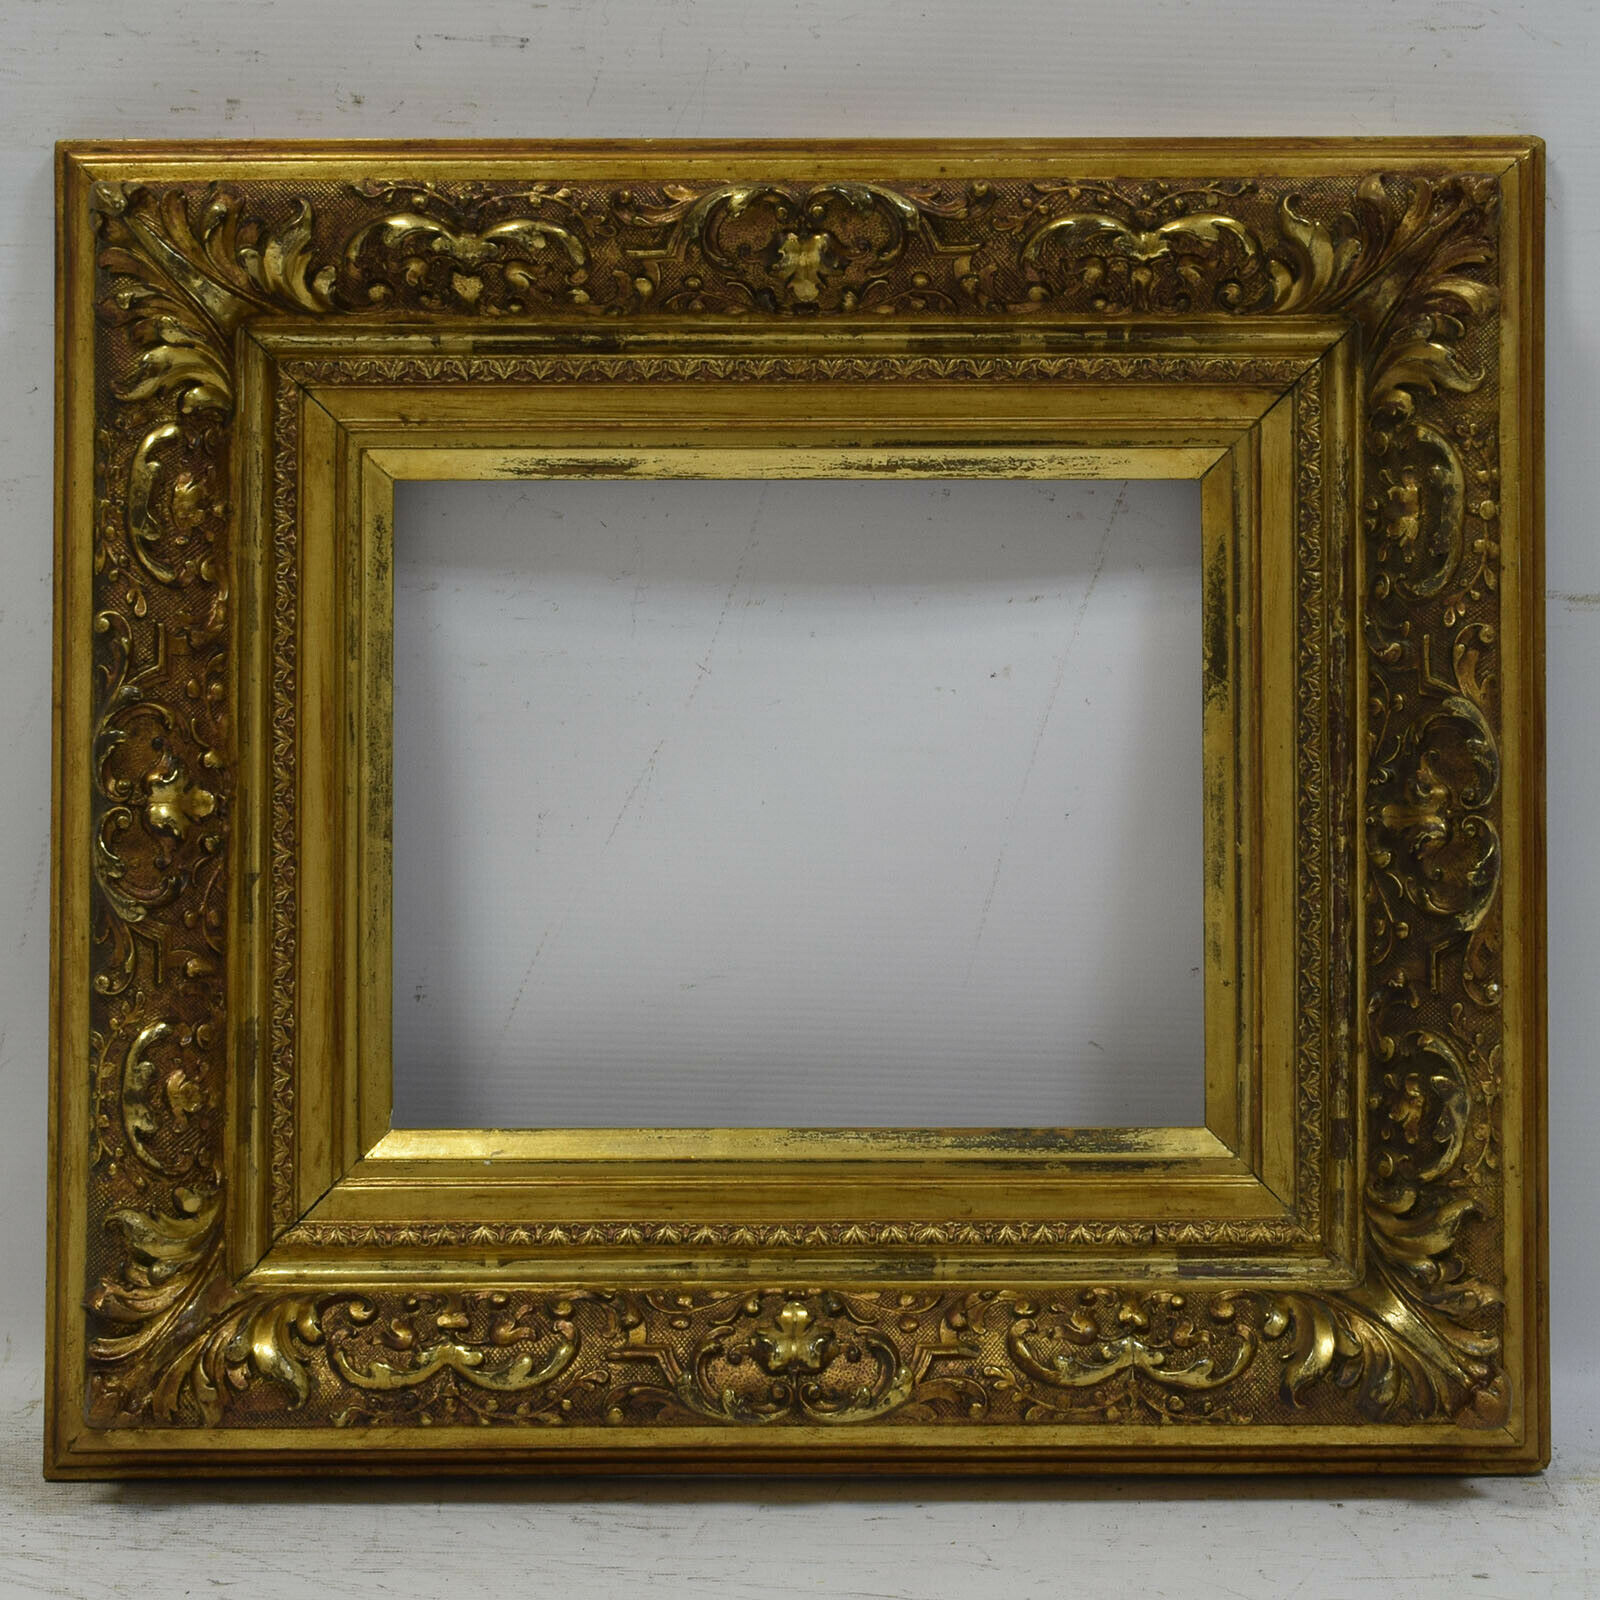 Ca. 1850-1900 antique wooden frame original gilding 11.6 x 9,4 in inside